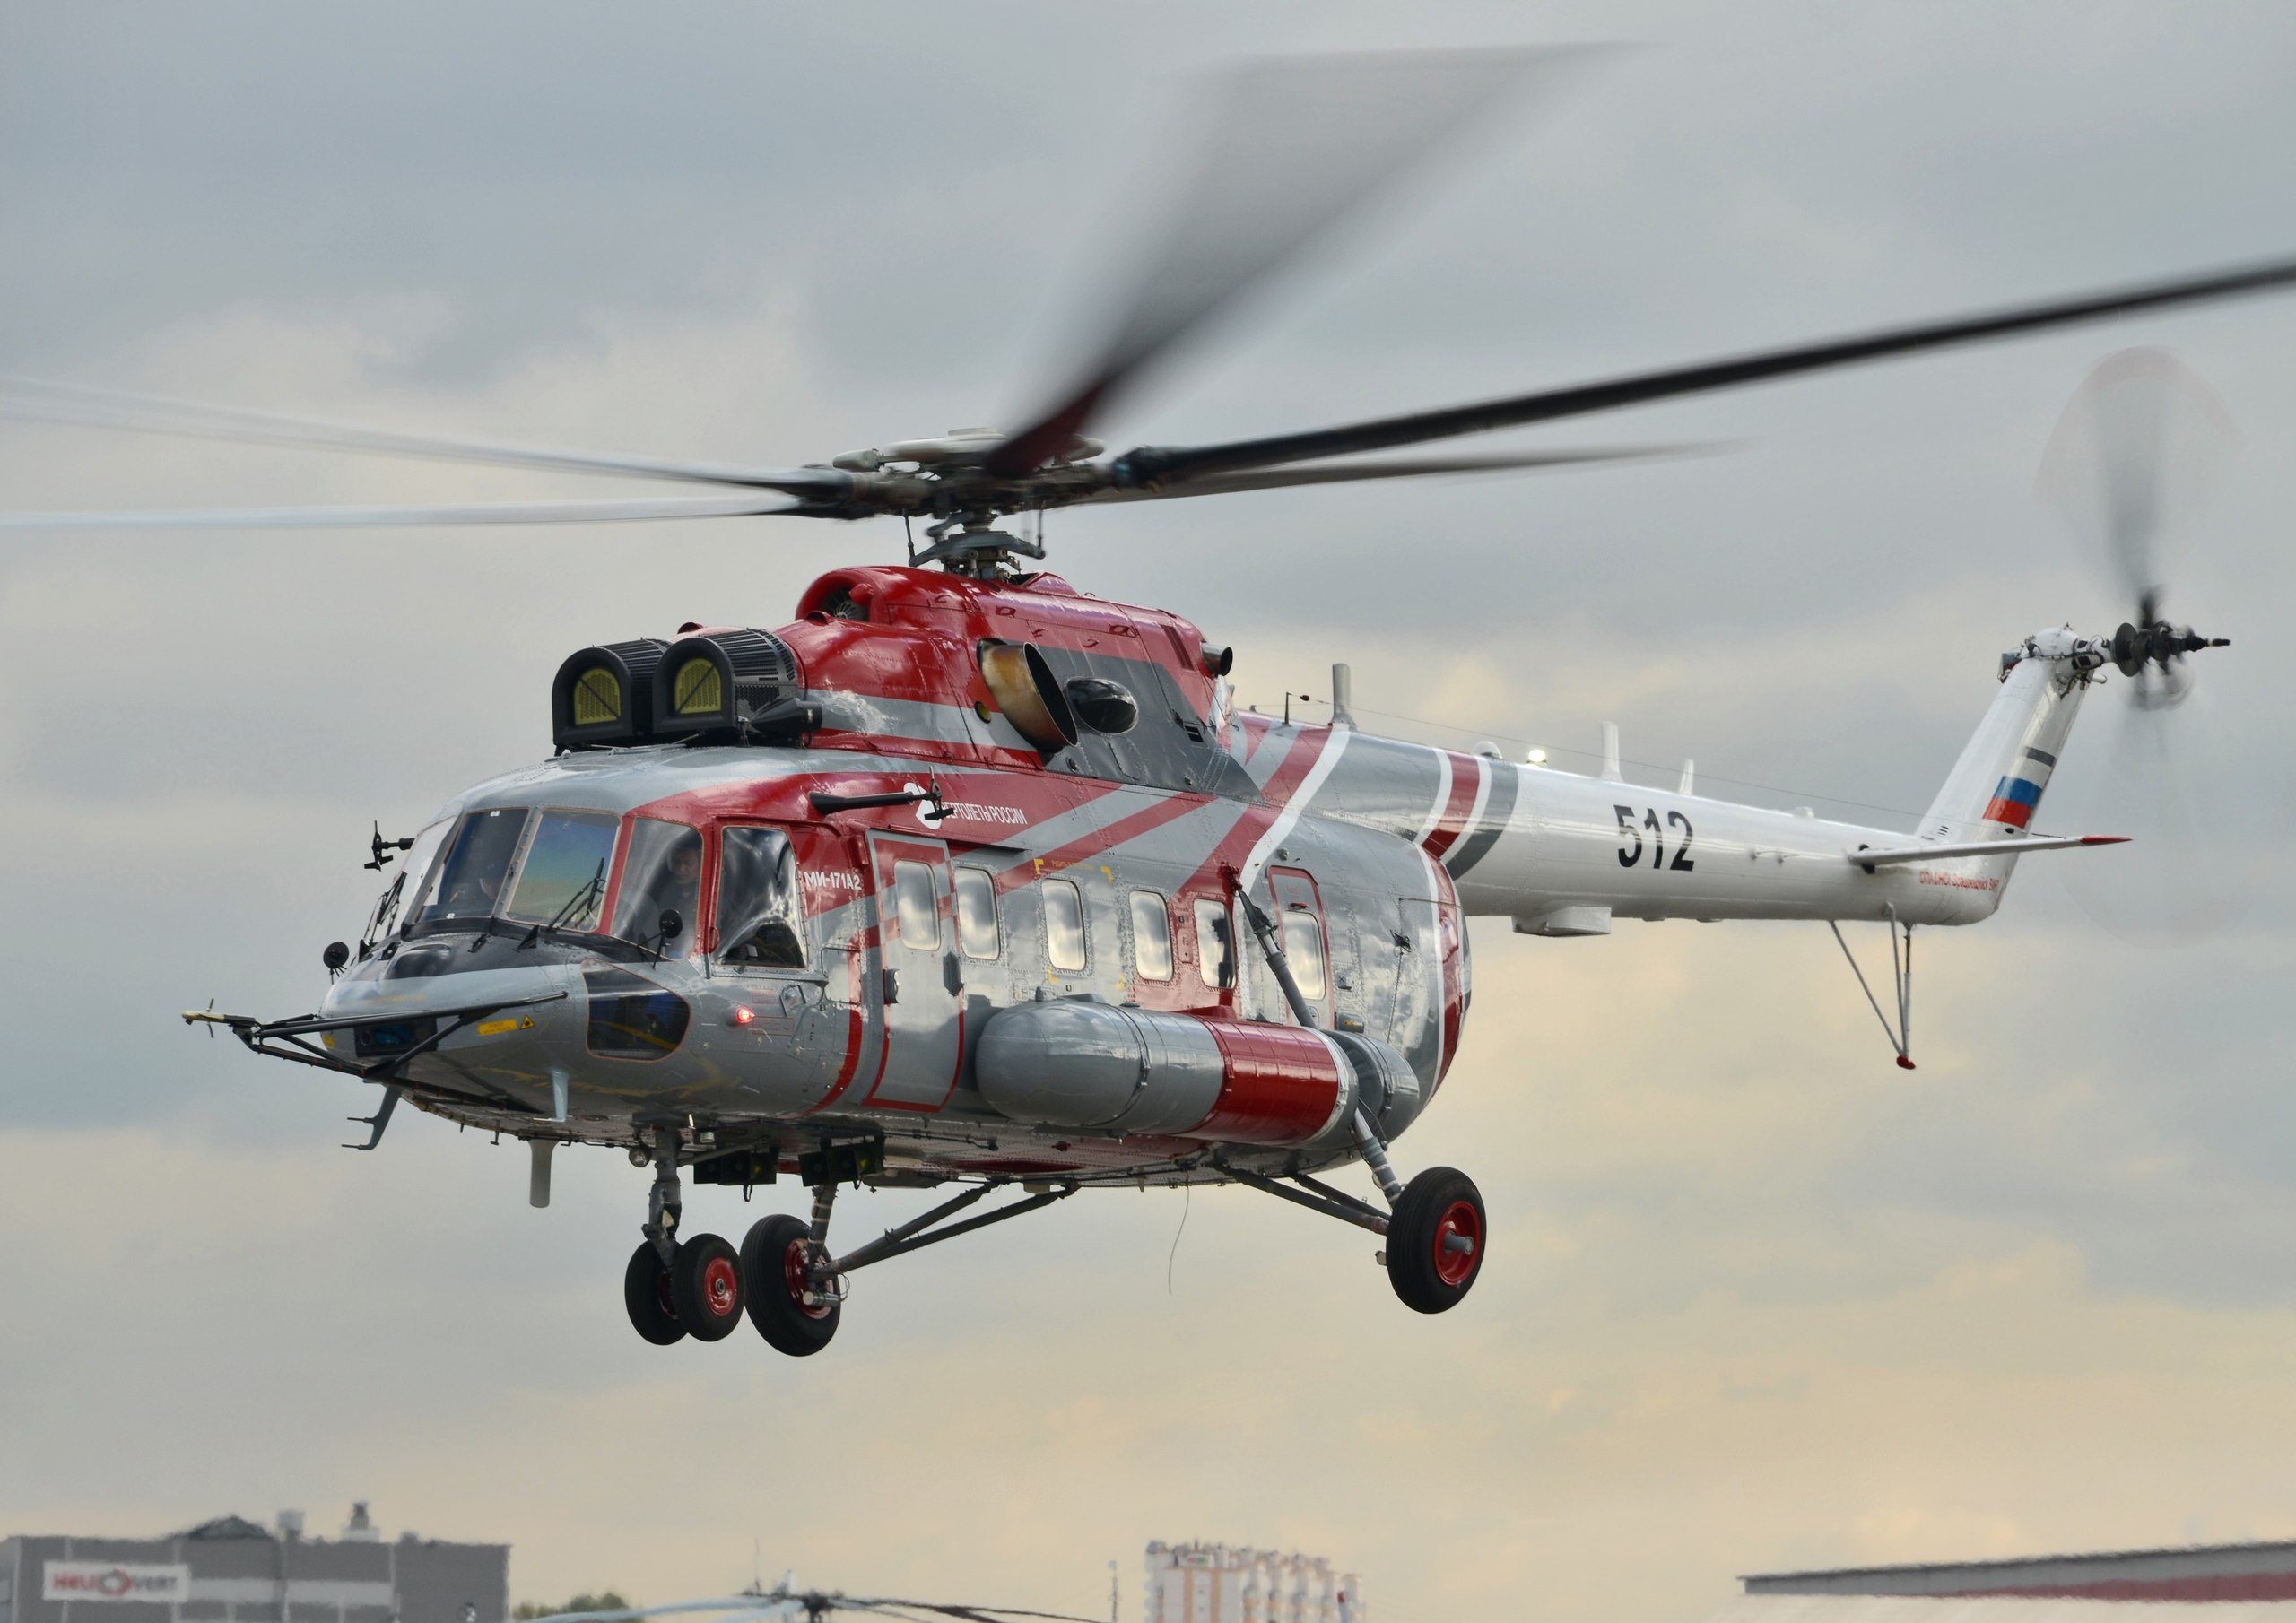 «Вертолеты России» принимают участие в выставке SITDEF-2019